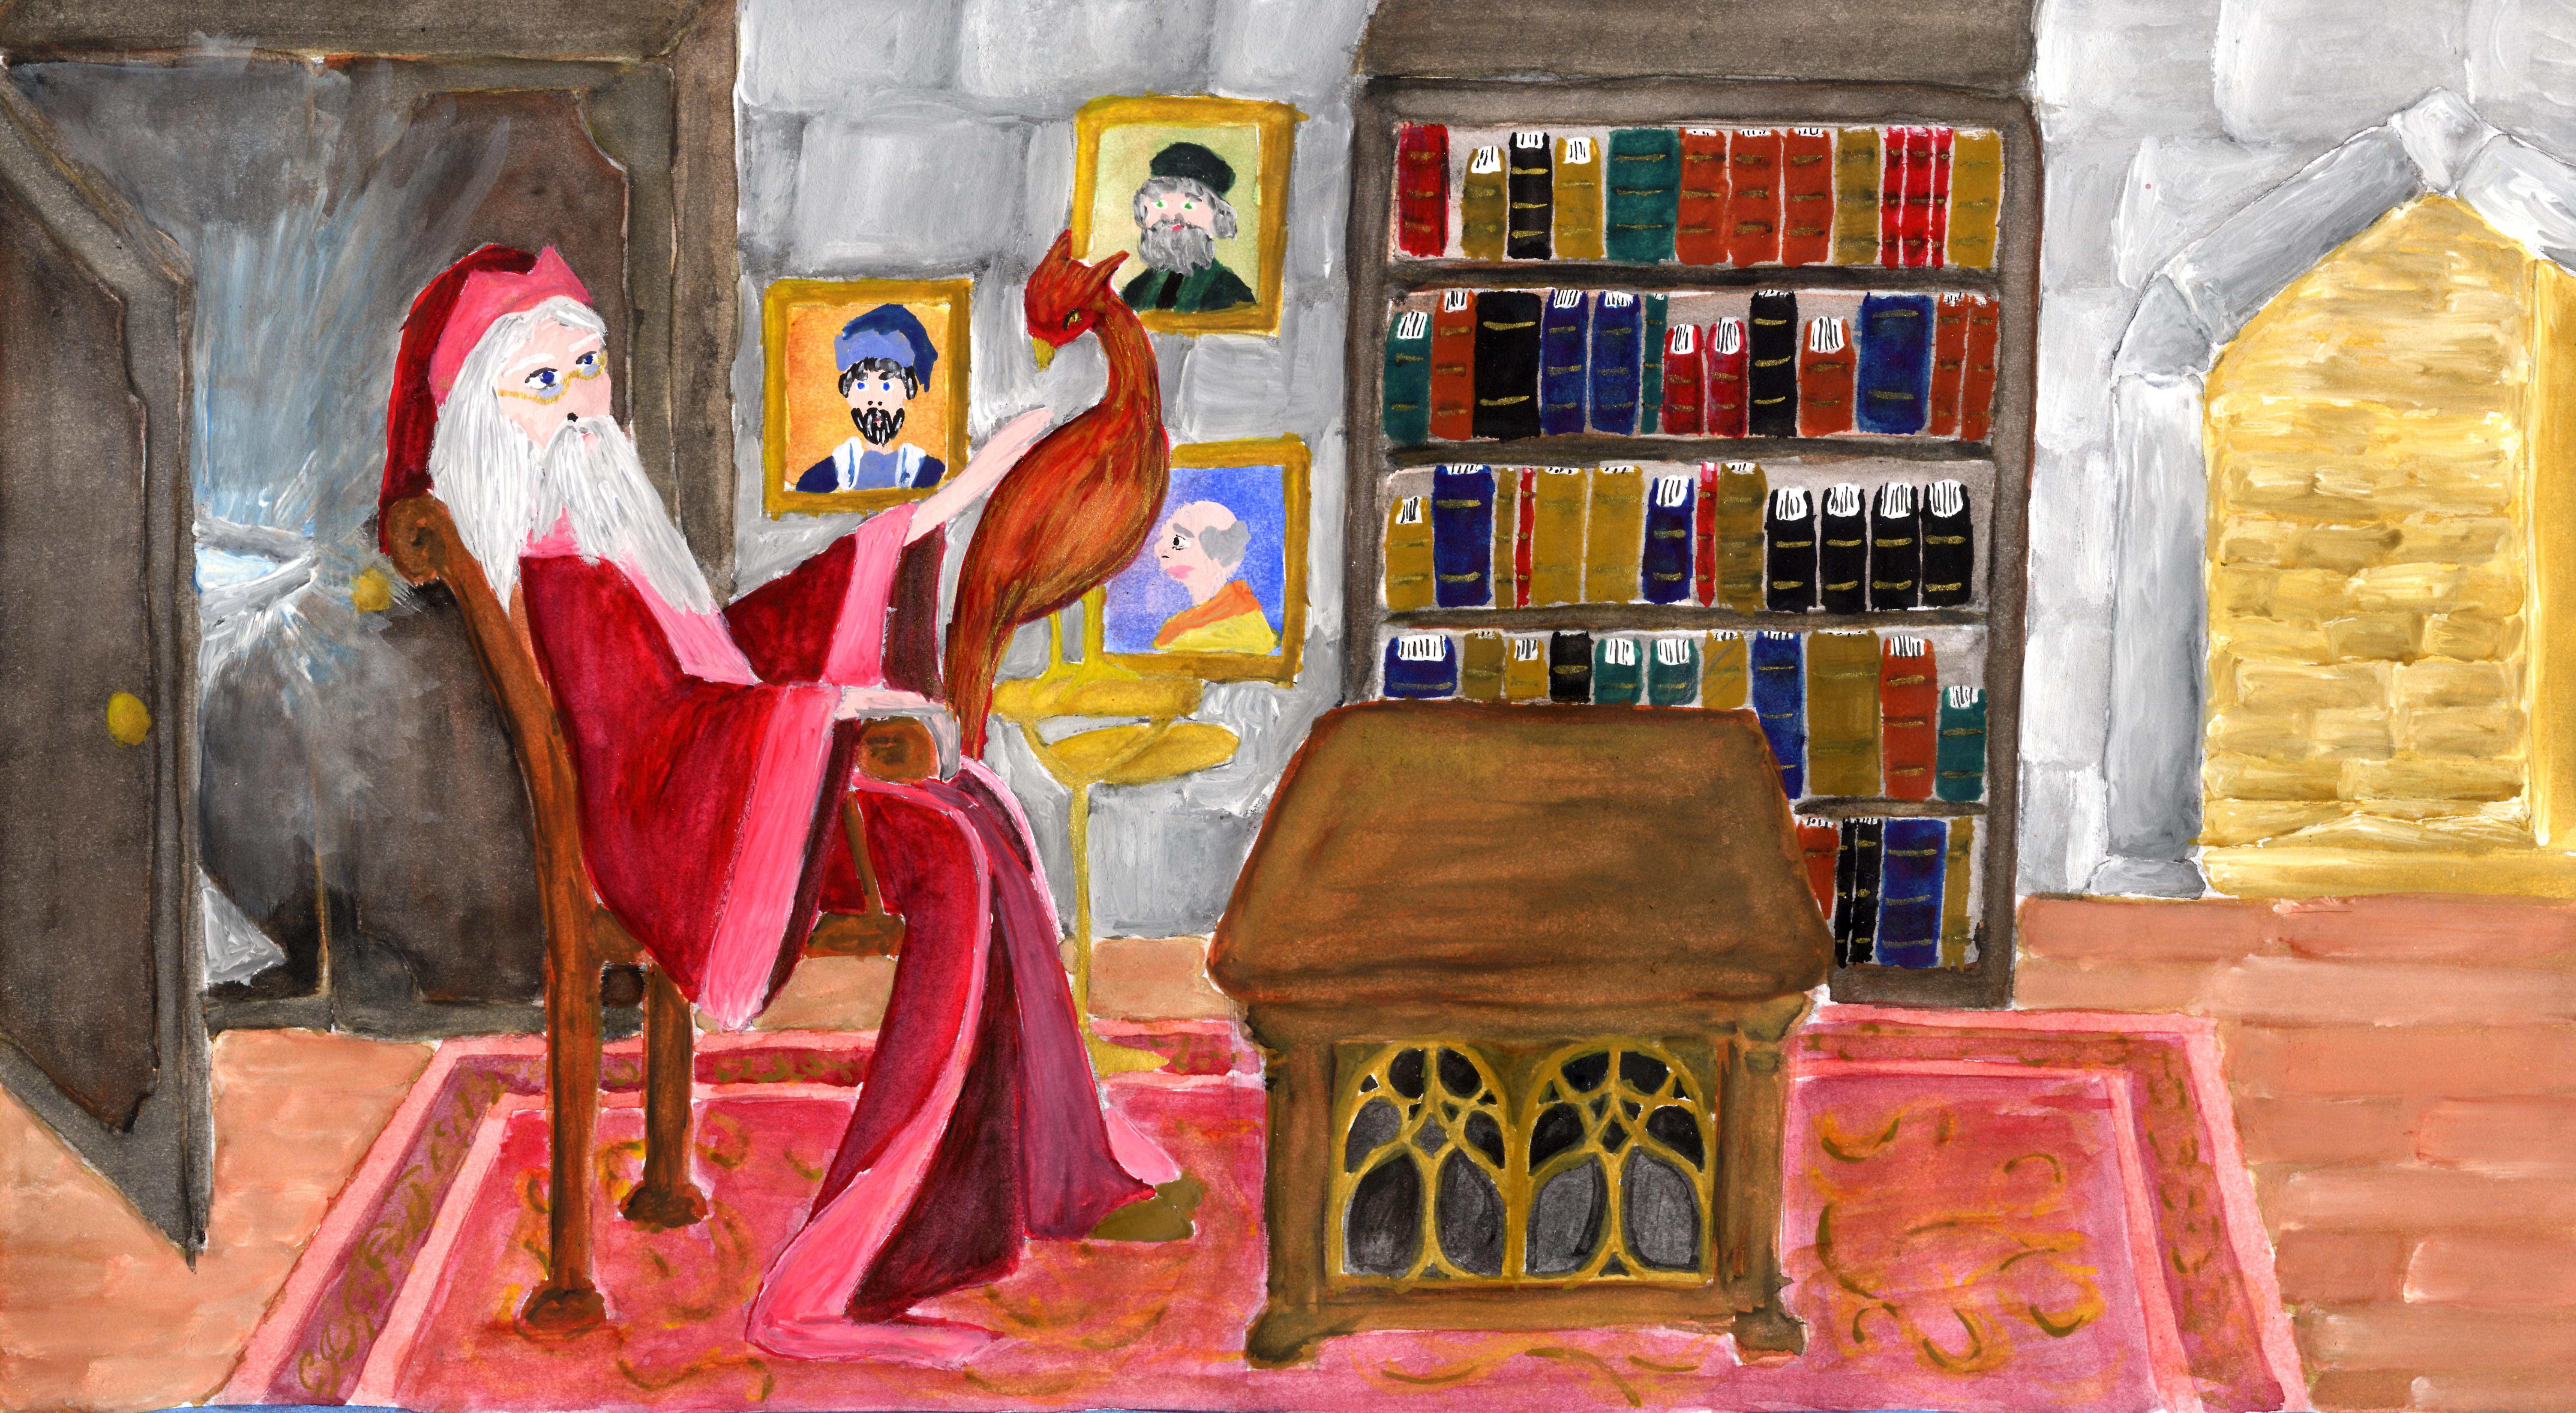 Dumbledore sitzt in seinem Büro hinter dem Schreibtisch. Er streichelt Fawkes über den Rücken, der auf einer Stange neben ihm sitzt. Hinter ihm ist der Schrank mit dem Denkarium leicht geöffnet und ein heller Schimmer dringt in den Raum hinein. An der Wand hängen einige Portäts vergangener Schulleiter und daneben steht ein Regal vollgestellt mit Büchern.